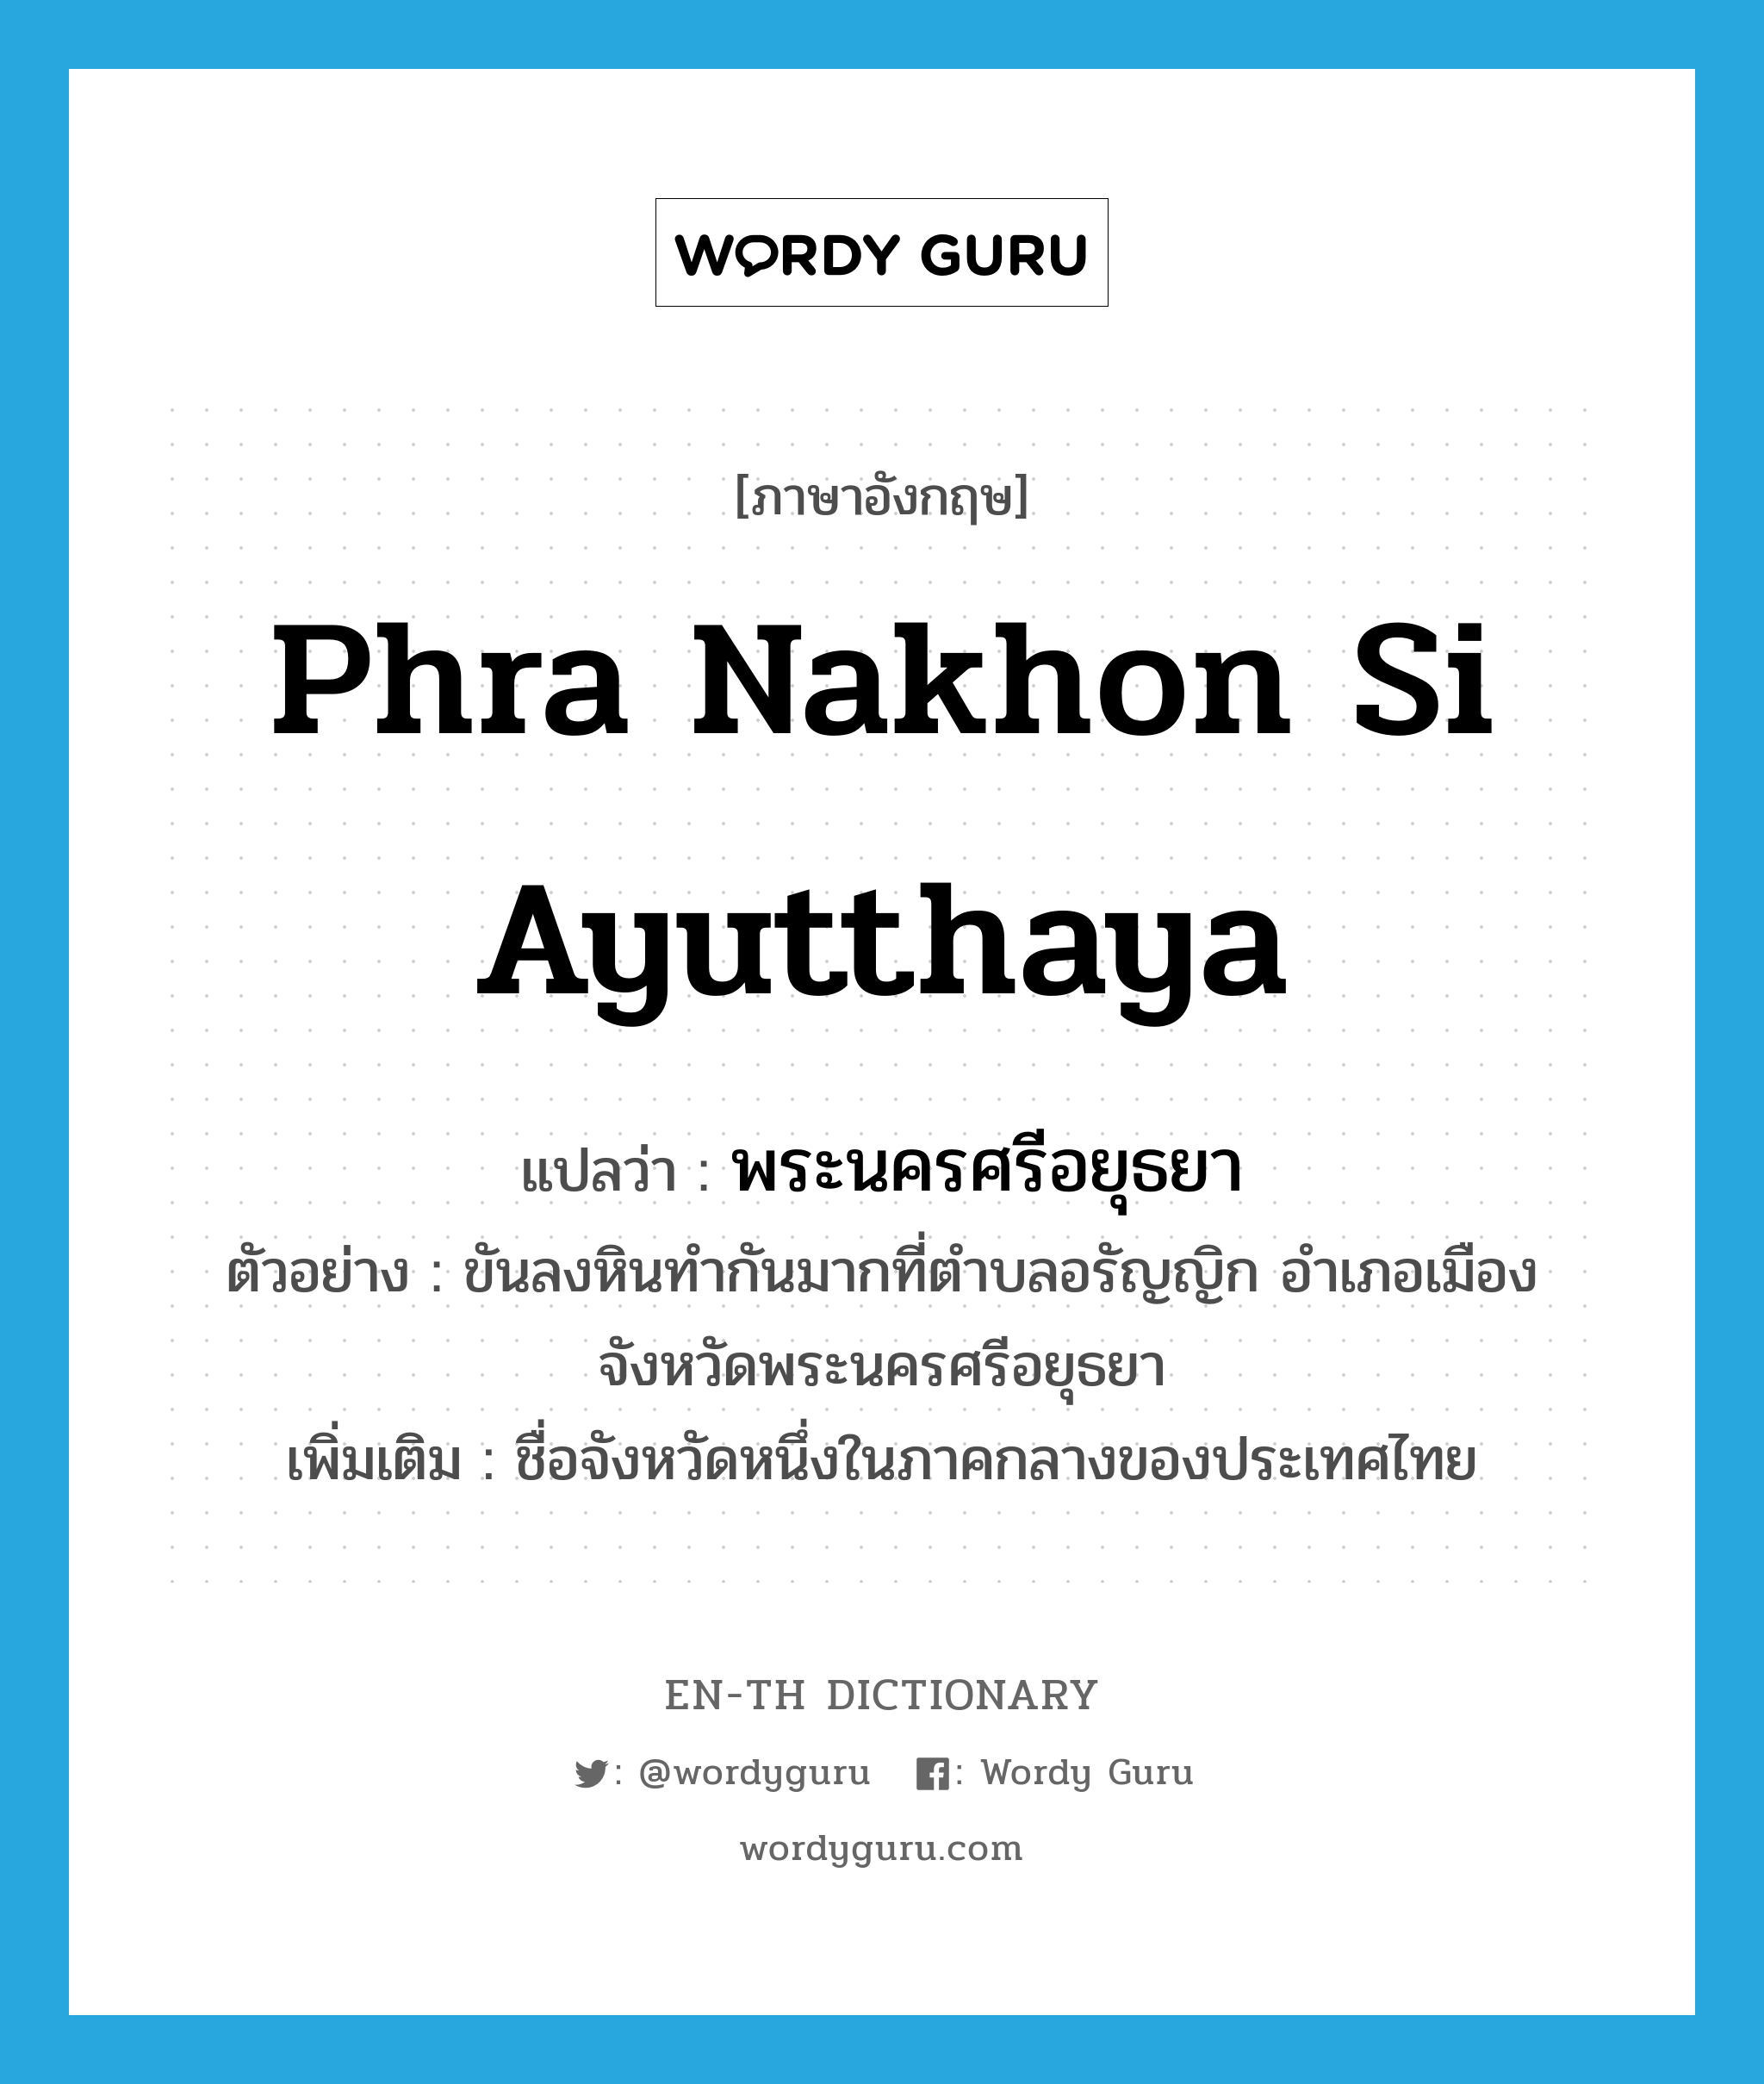 พระนครศรีอยุธยา ภาษาอังกฤษ?, คำศัพท์ภาษาอังกฤษ พระนครศรีอยุธยา แปลว่า Phra Nakhon Si Ayutthaya ประเภท N ตัวอย่าง ขันลงหินทำกันมากที่ตำบลอรัญญิก อำเภอเมือง จังหวัดพระนครศรีอยุธยา เพิ่มเติม ชื่อจังหวัดหนึ่งในภาคกลางของประเทศไทย หมวด N